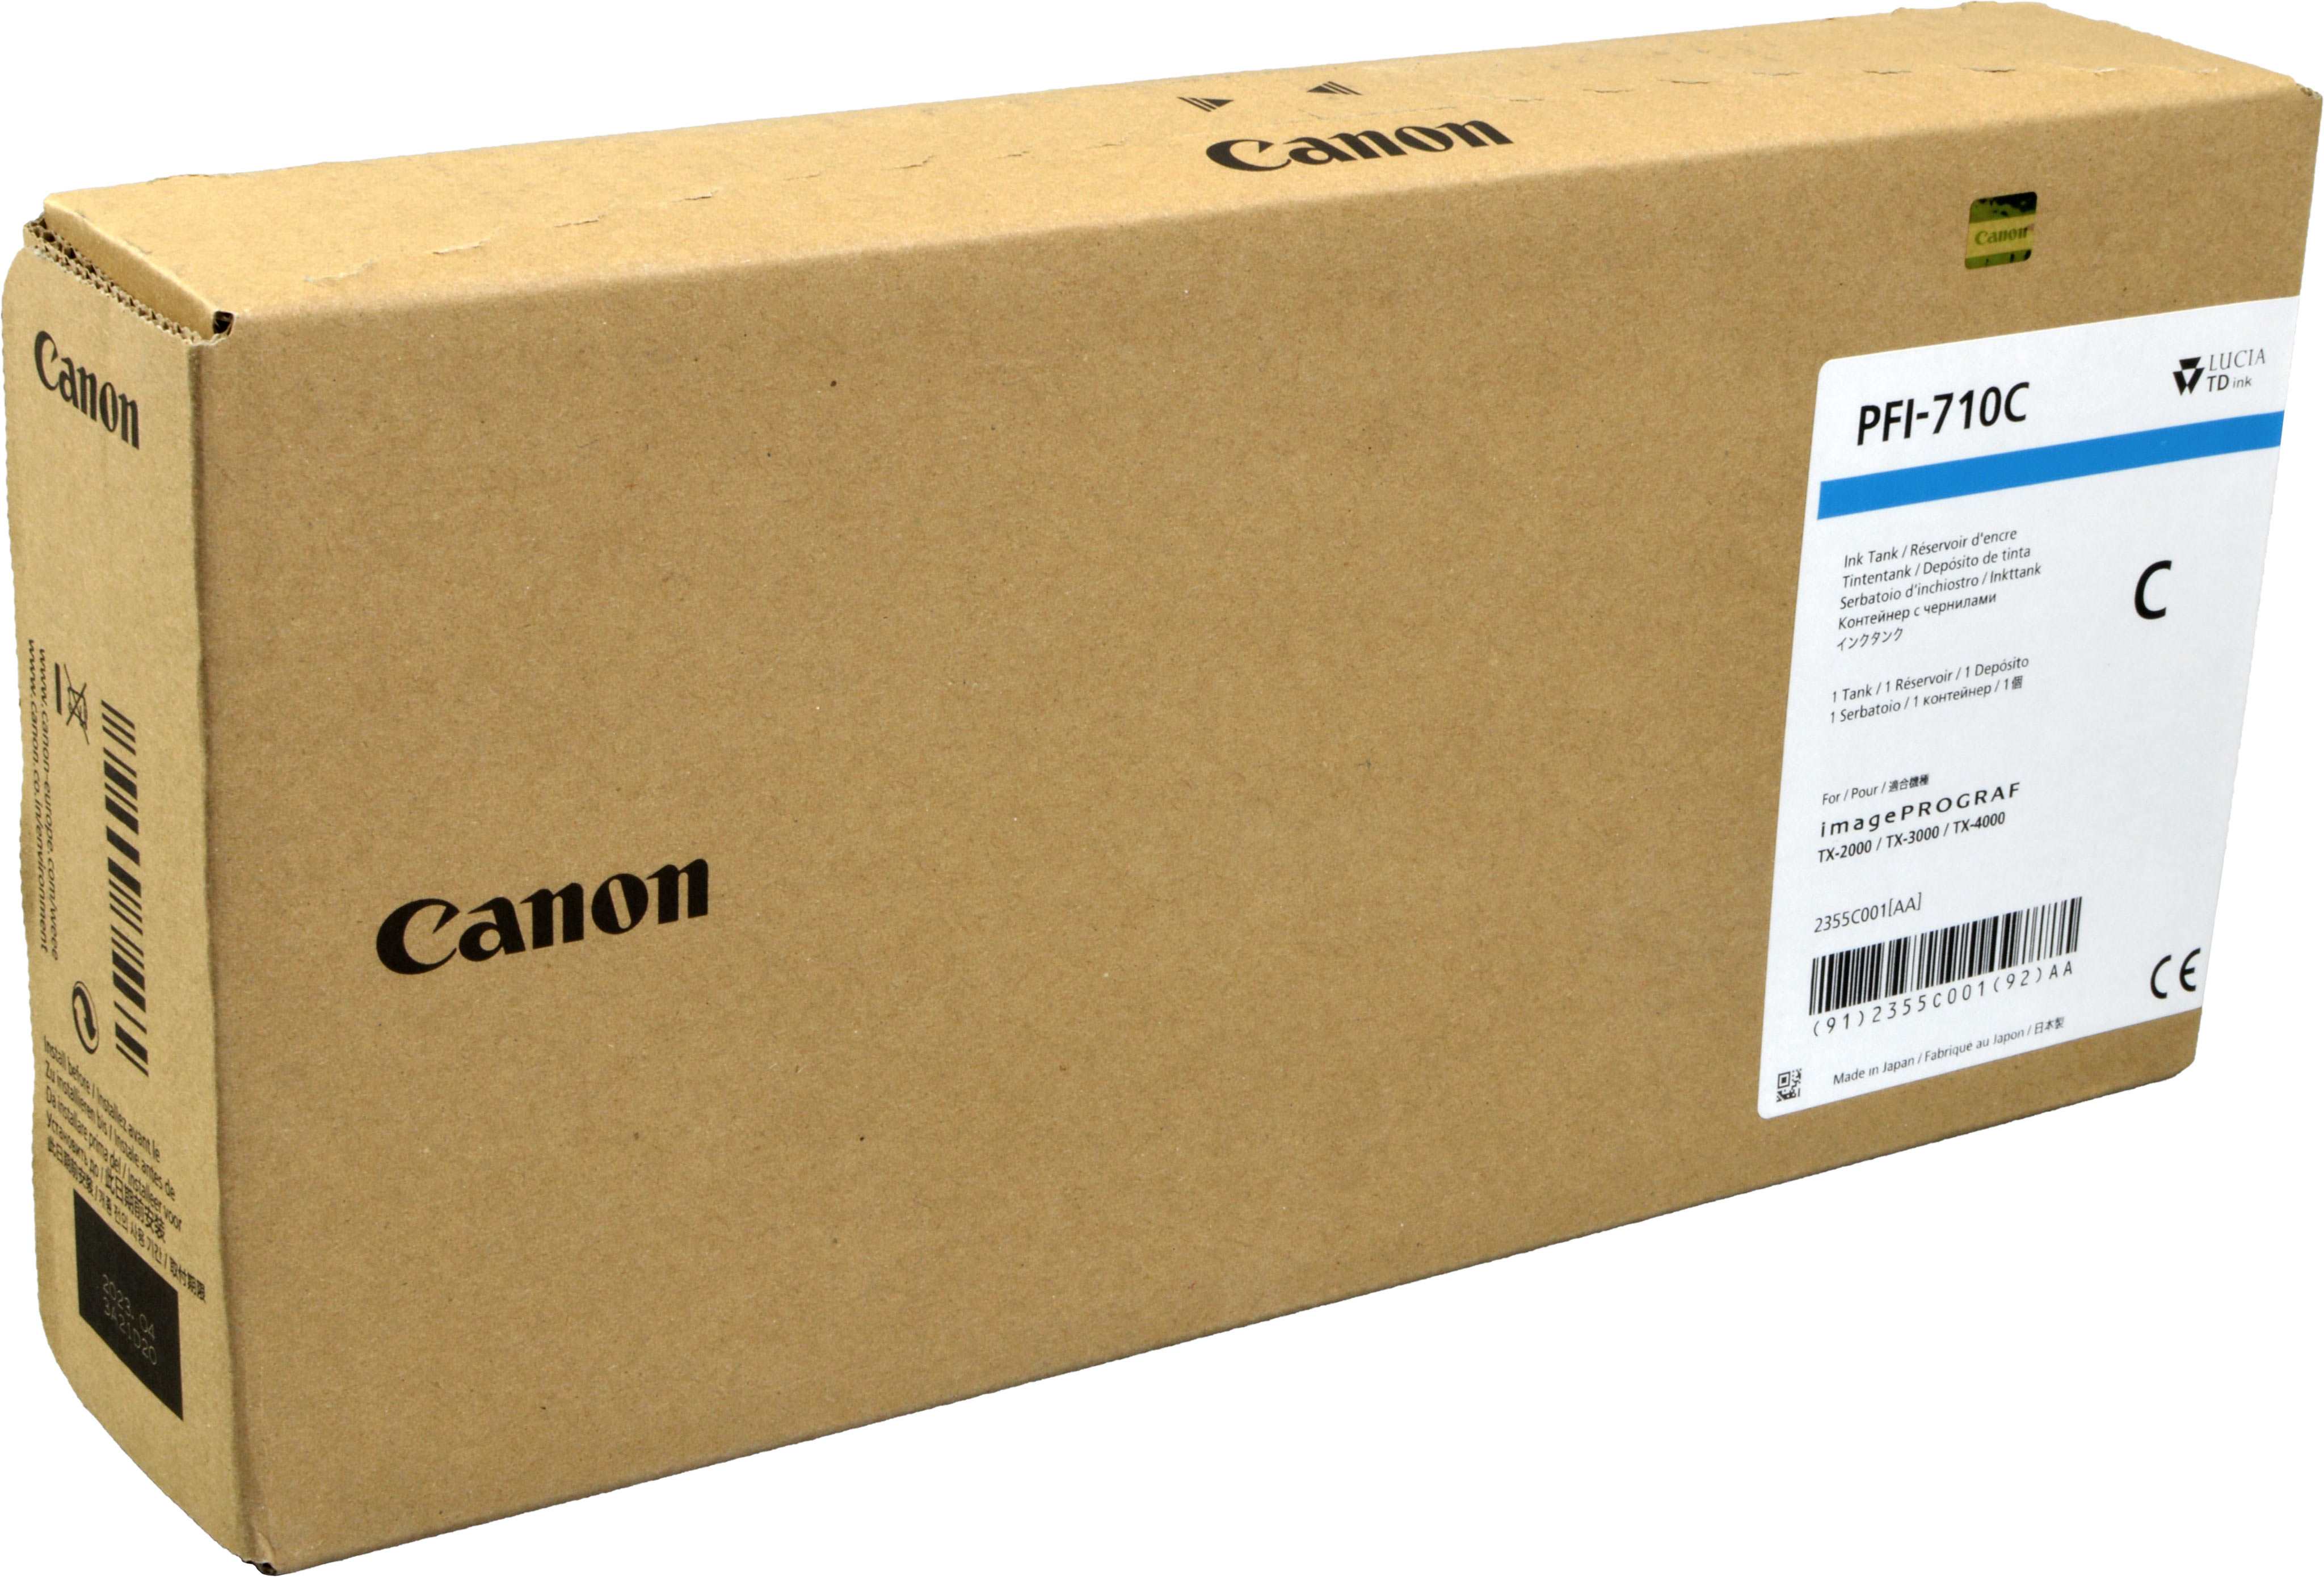 Canon Tinte 2355C001  PFI-710C  cyan